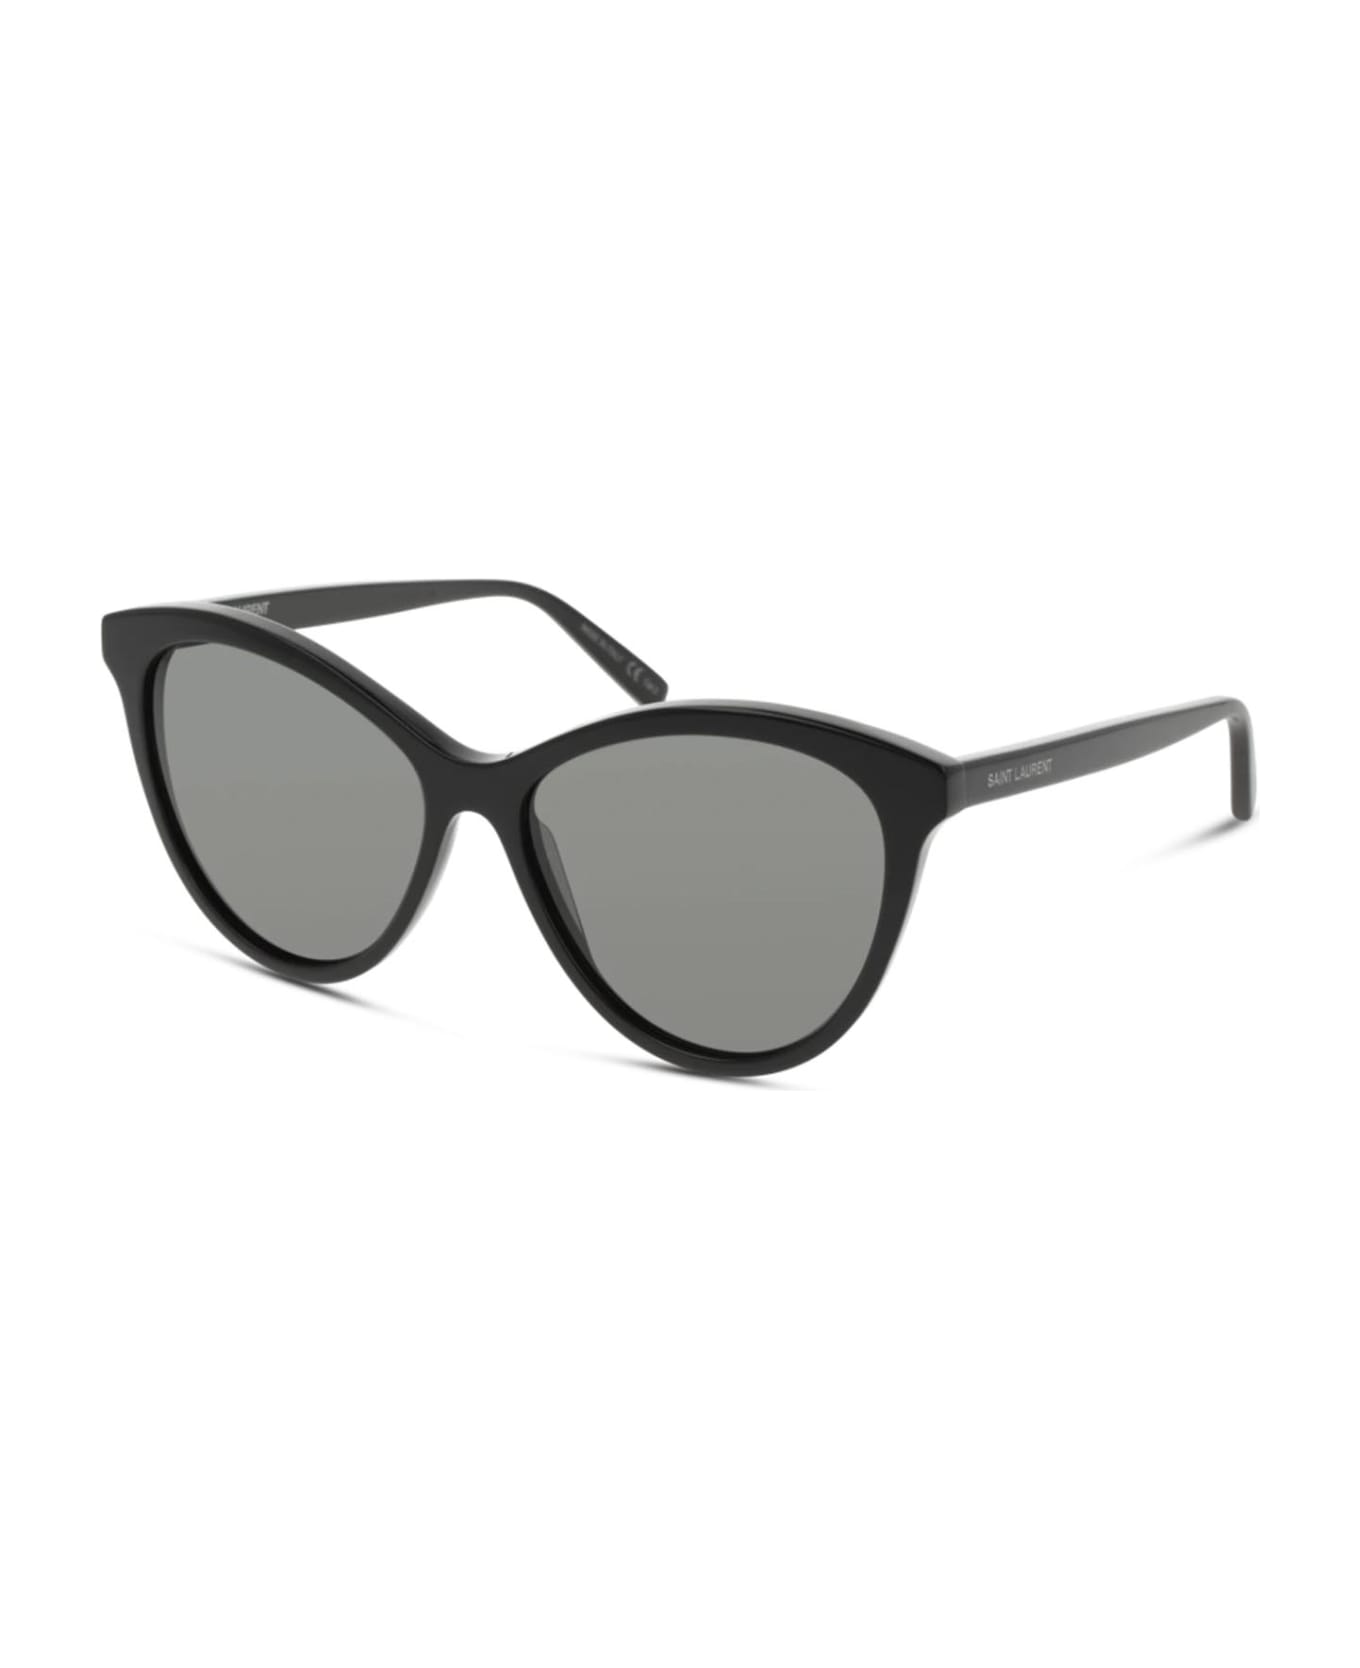 Saint Laurent Eyewear Sl 456 Black Sunglasses - Black サングラス